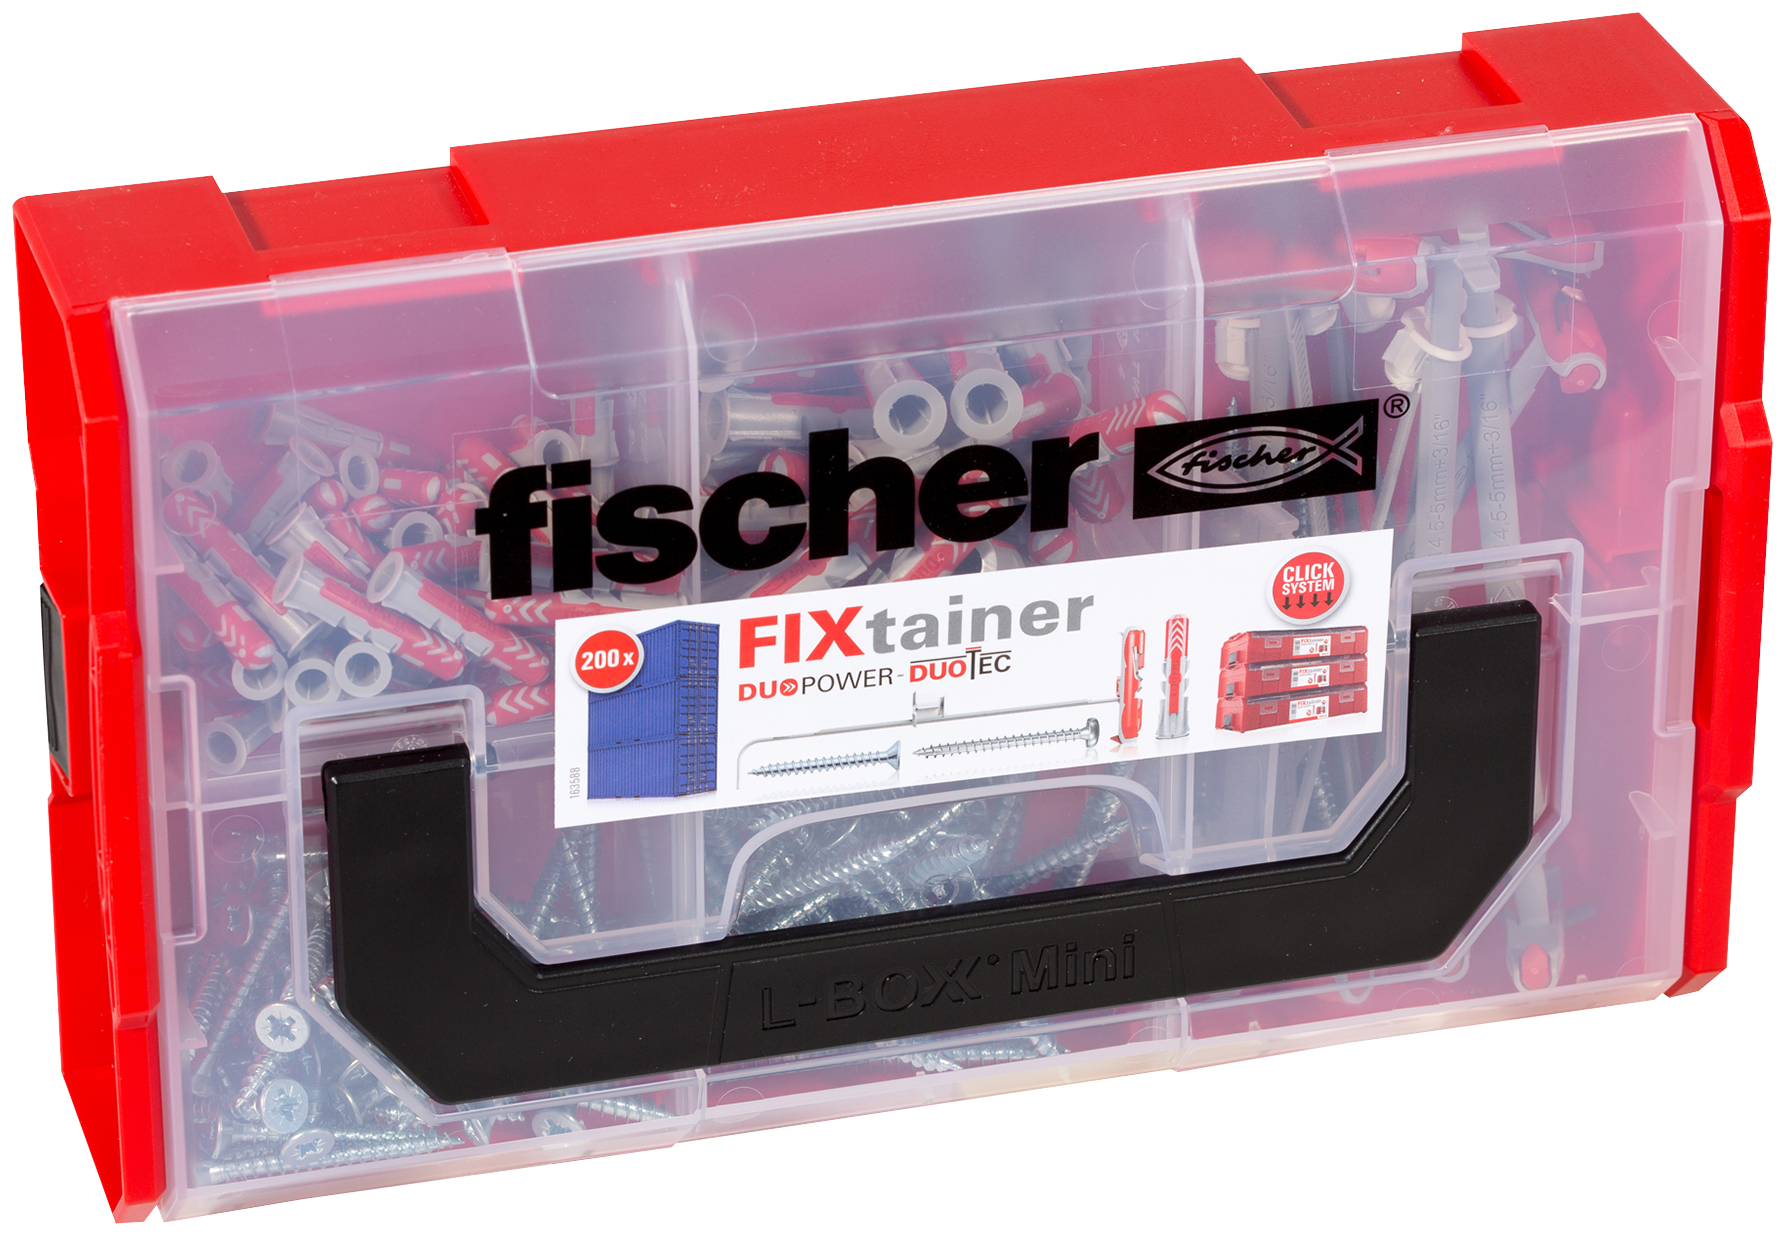 fischer Fixtainer DUOPOWER DUOTEC Valigetta tasselli (100 Pz.) Pratiche soluzioni di fissaggio per le pi comuni applicazioni nel fischer FixTainer impilabile e di alta qualit.